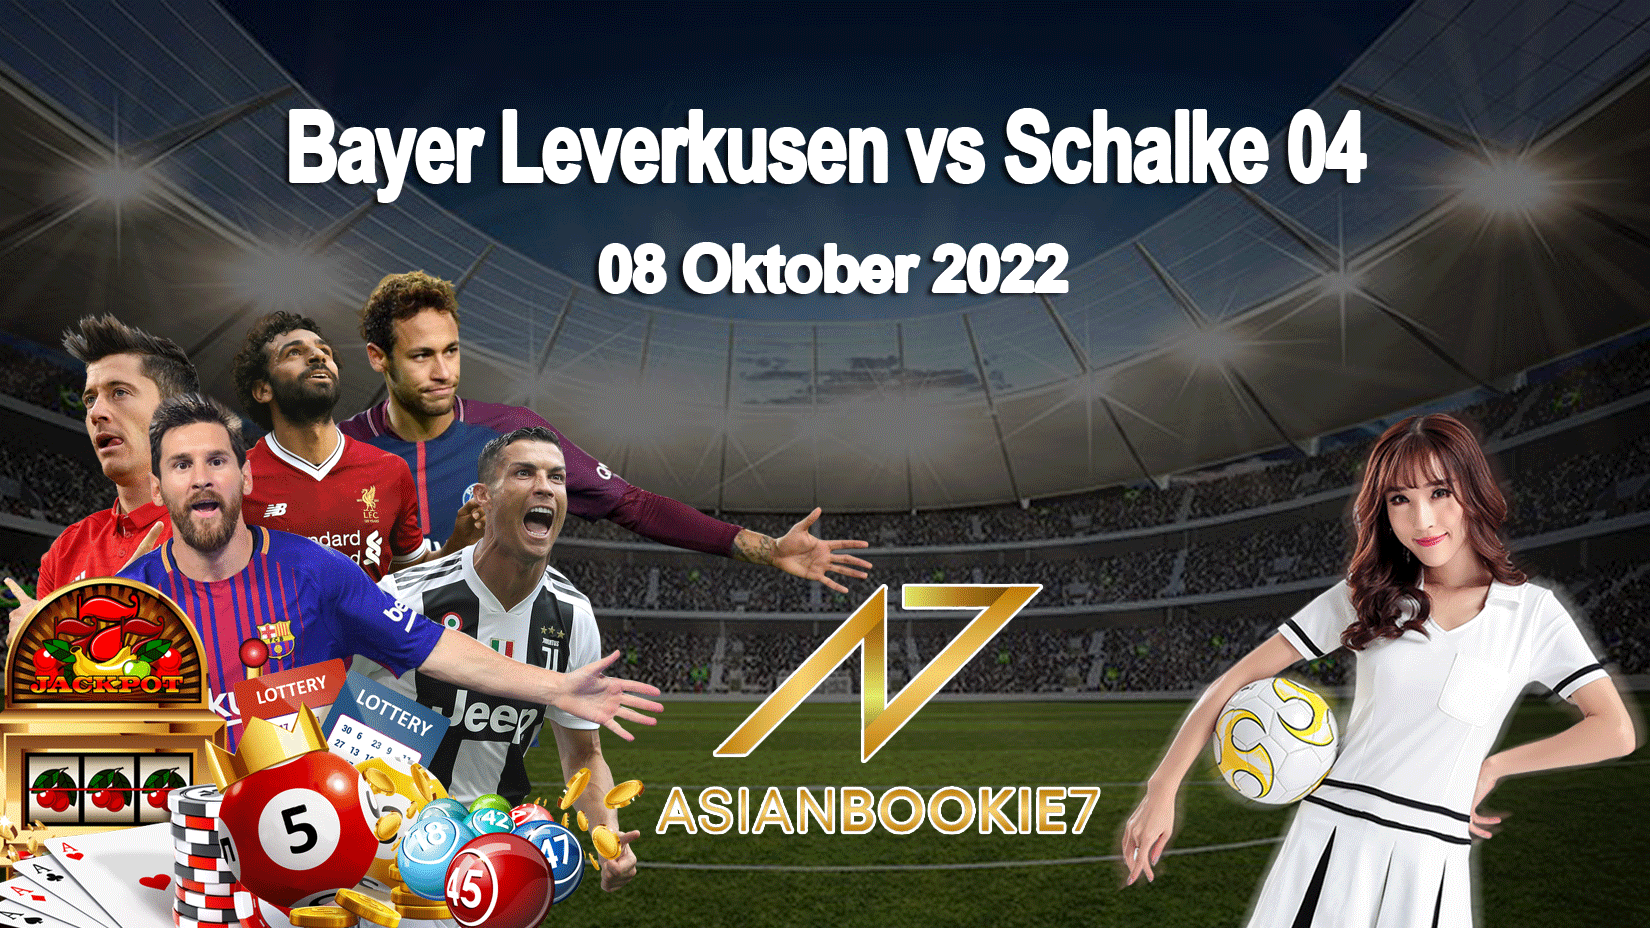 Prediksi Bayer Leverkusen vs Schalke 04 08 Oktober 2022